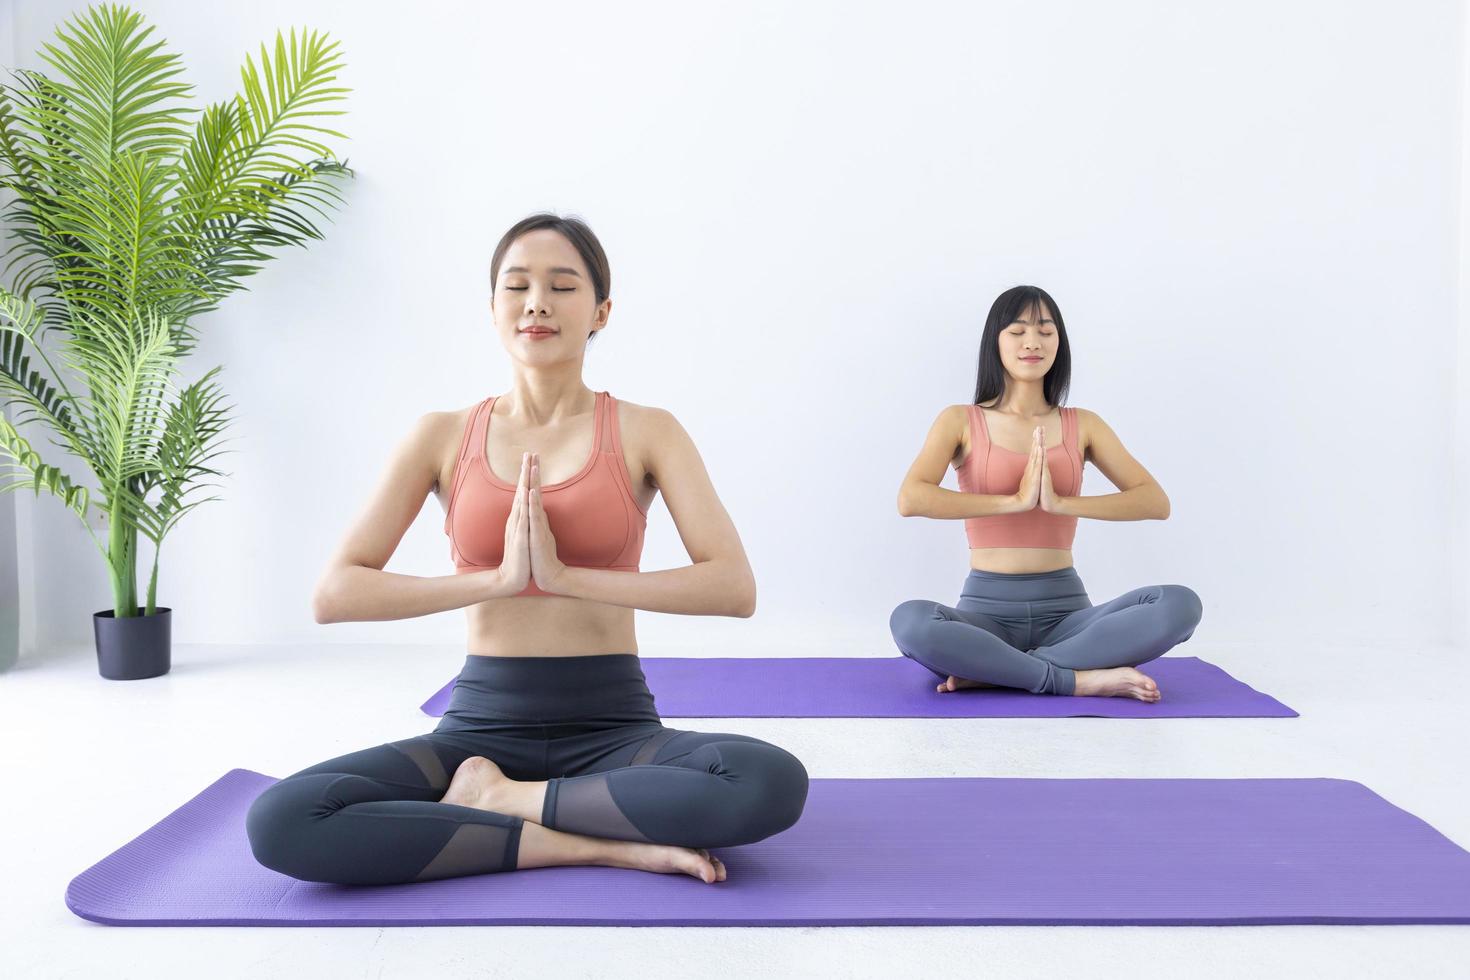 mulher asiática praticando ioga indoor com posição fácil e simples para controlar a inspiração e expiração em pose de meditação foto